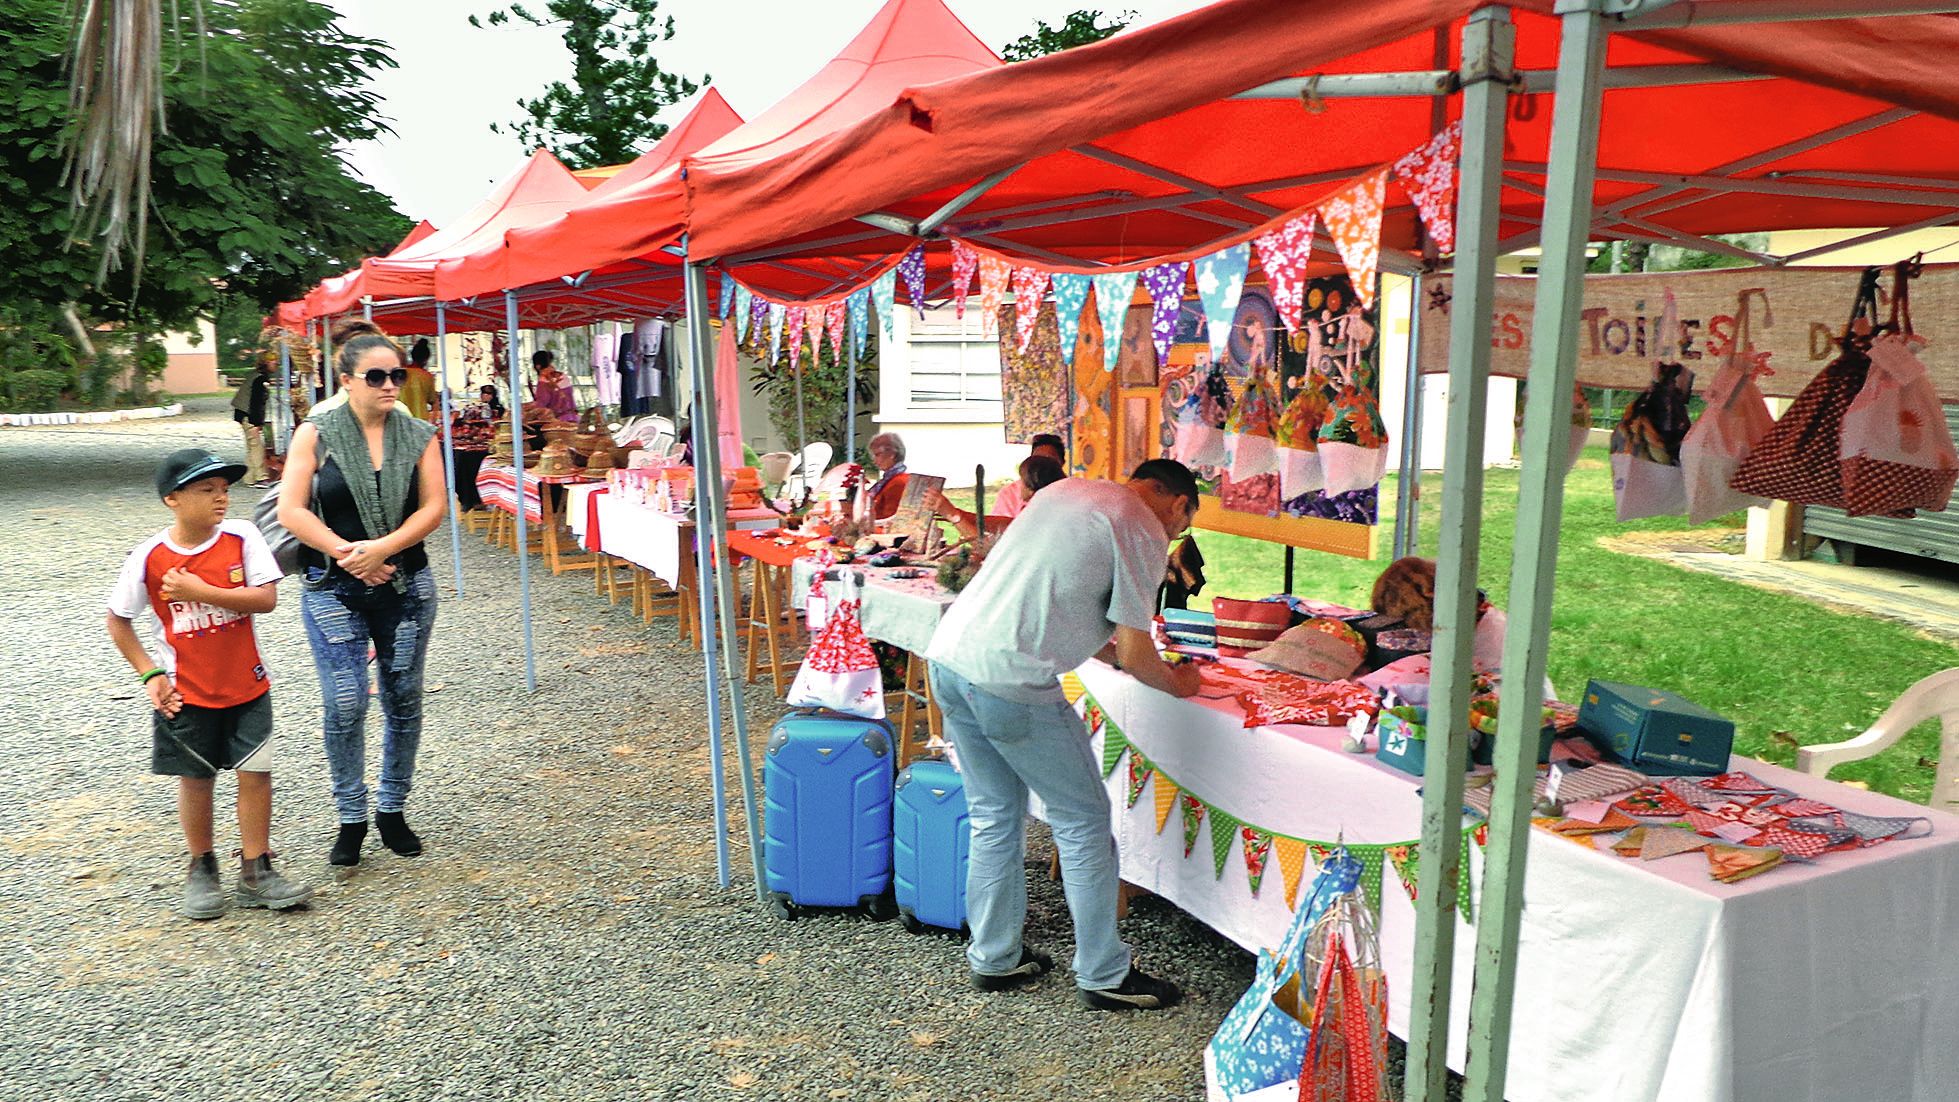 Dimanche, de nombreux artisans locaux sont venus présenter leurs travaux et ont permis aux visiteurs de découvrir des produits réalisés dans la région.